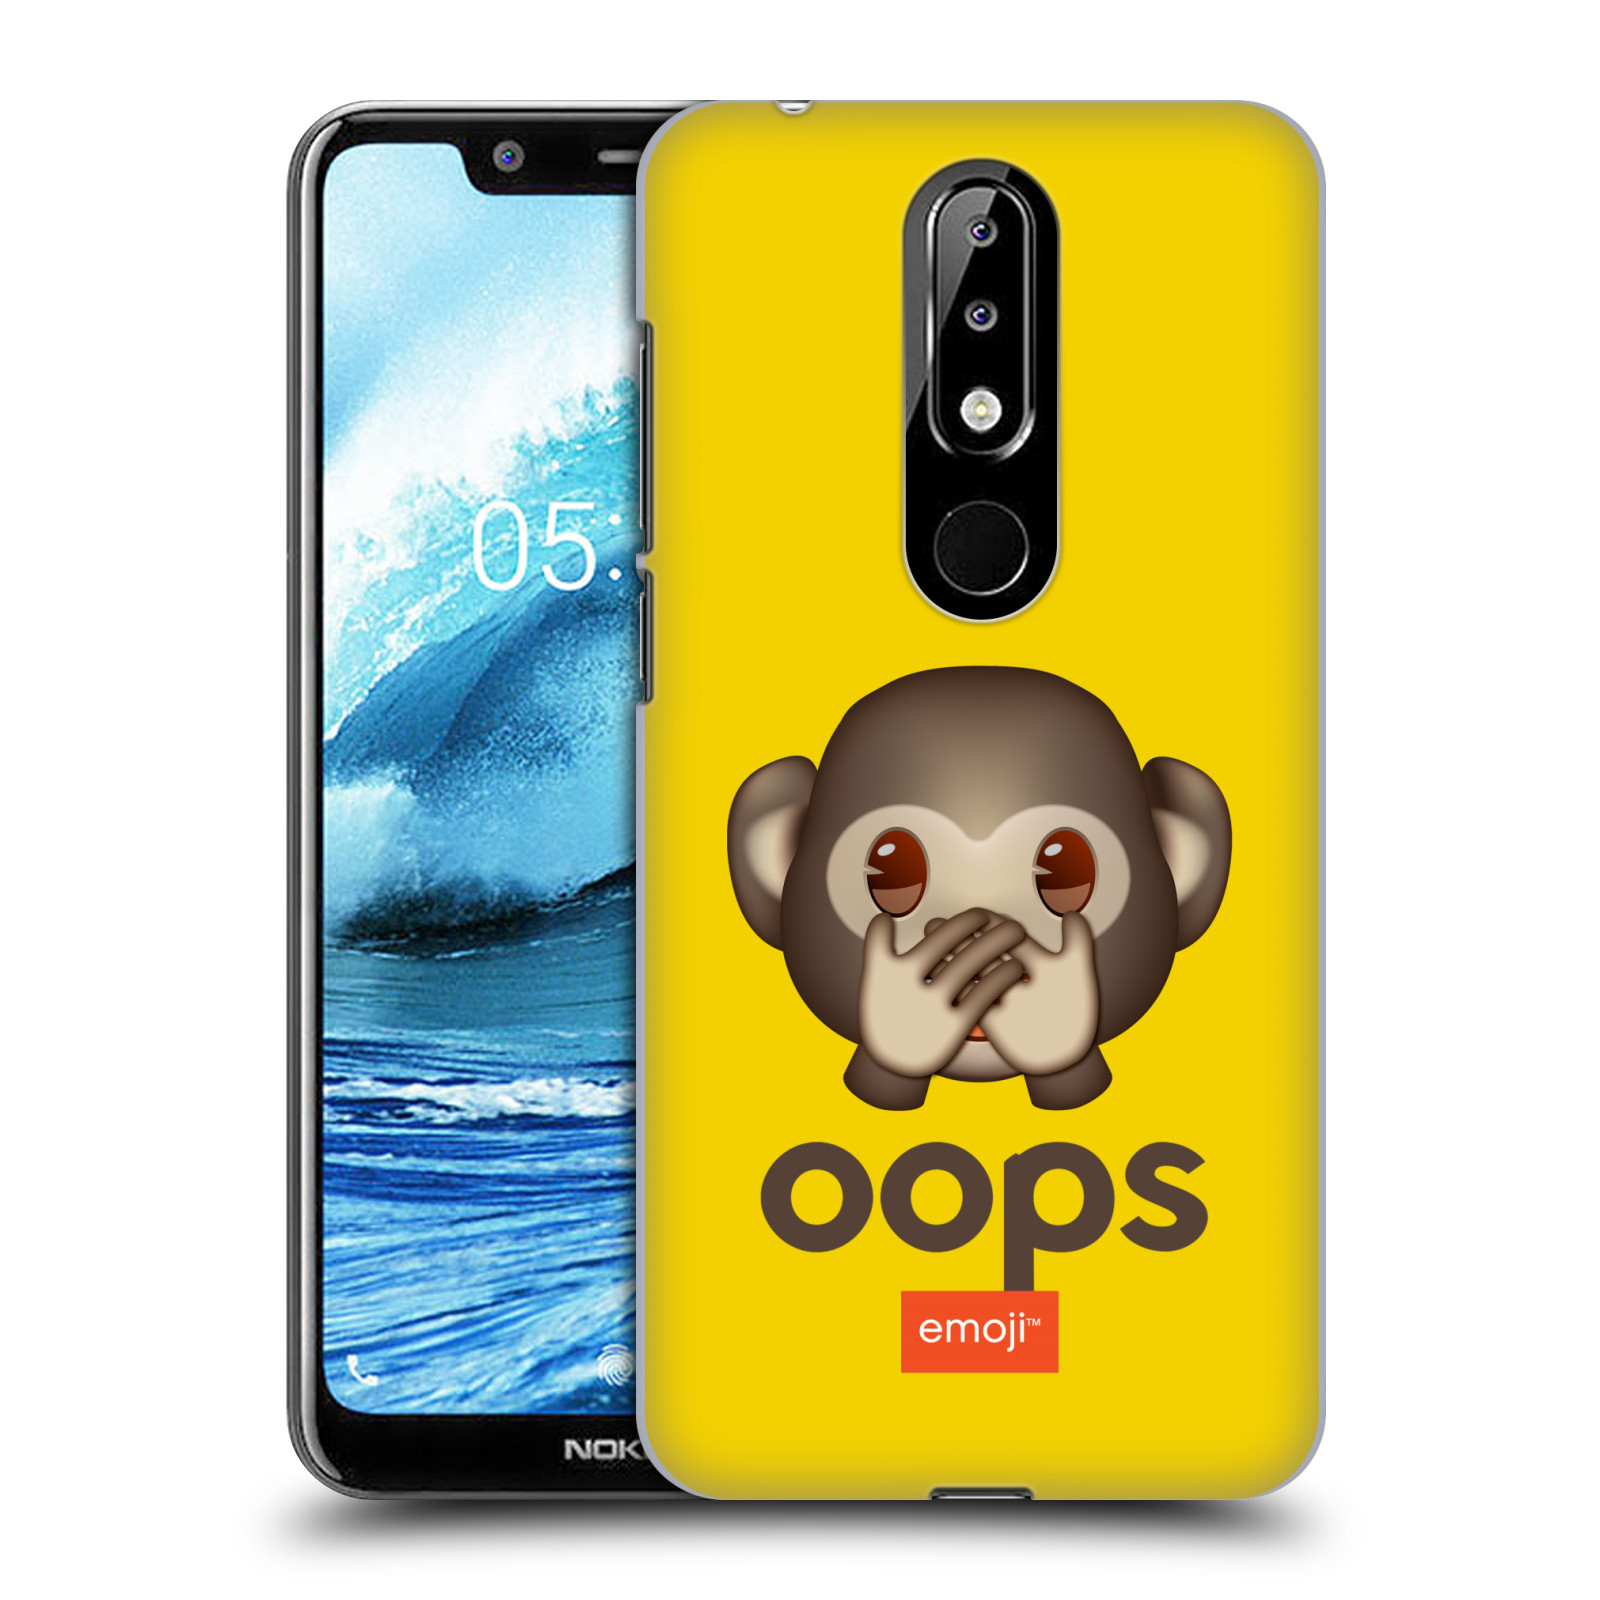 Pouzdro na mobil Nokia 5.1 PLUS - HEAD CASE - Emoji opička Oops